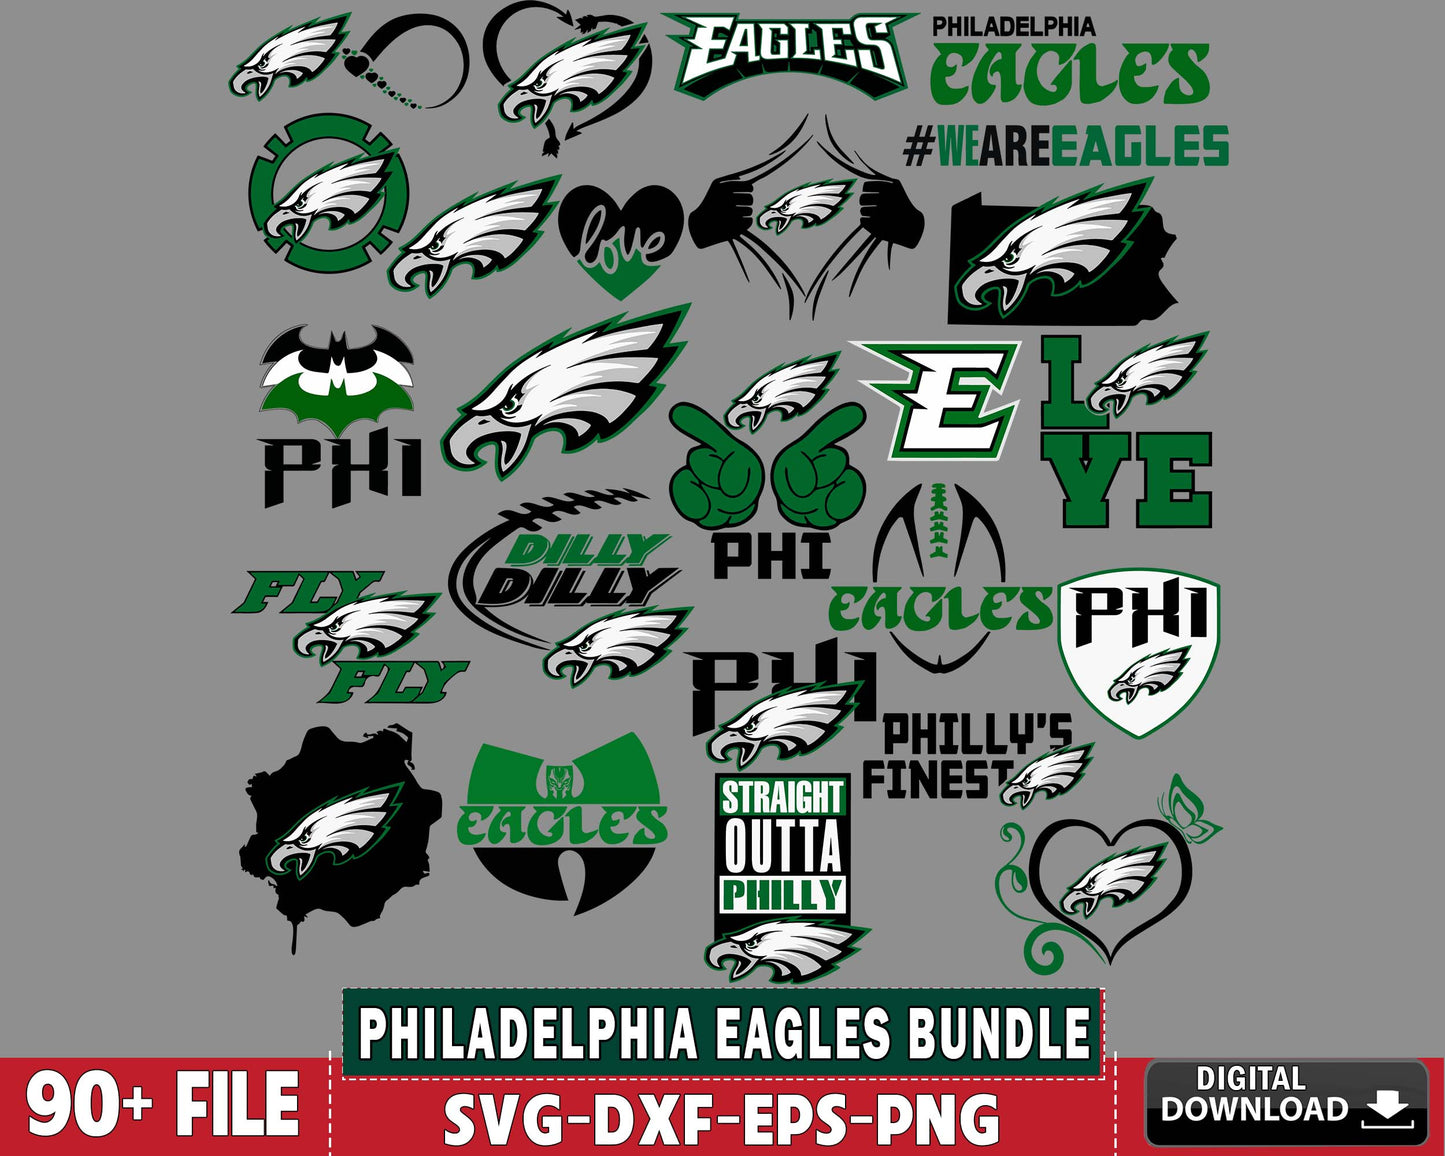 Philadelphia Eagles Bundle svg,90+ file Philadelphia Eagles Nfl svg, Bundle superbowl Digital Cut Files,  super bowl svg eps dxf png file, for Cricut, Silhouette, digital, file cut